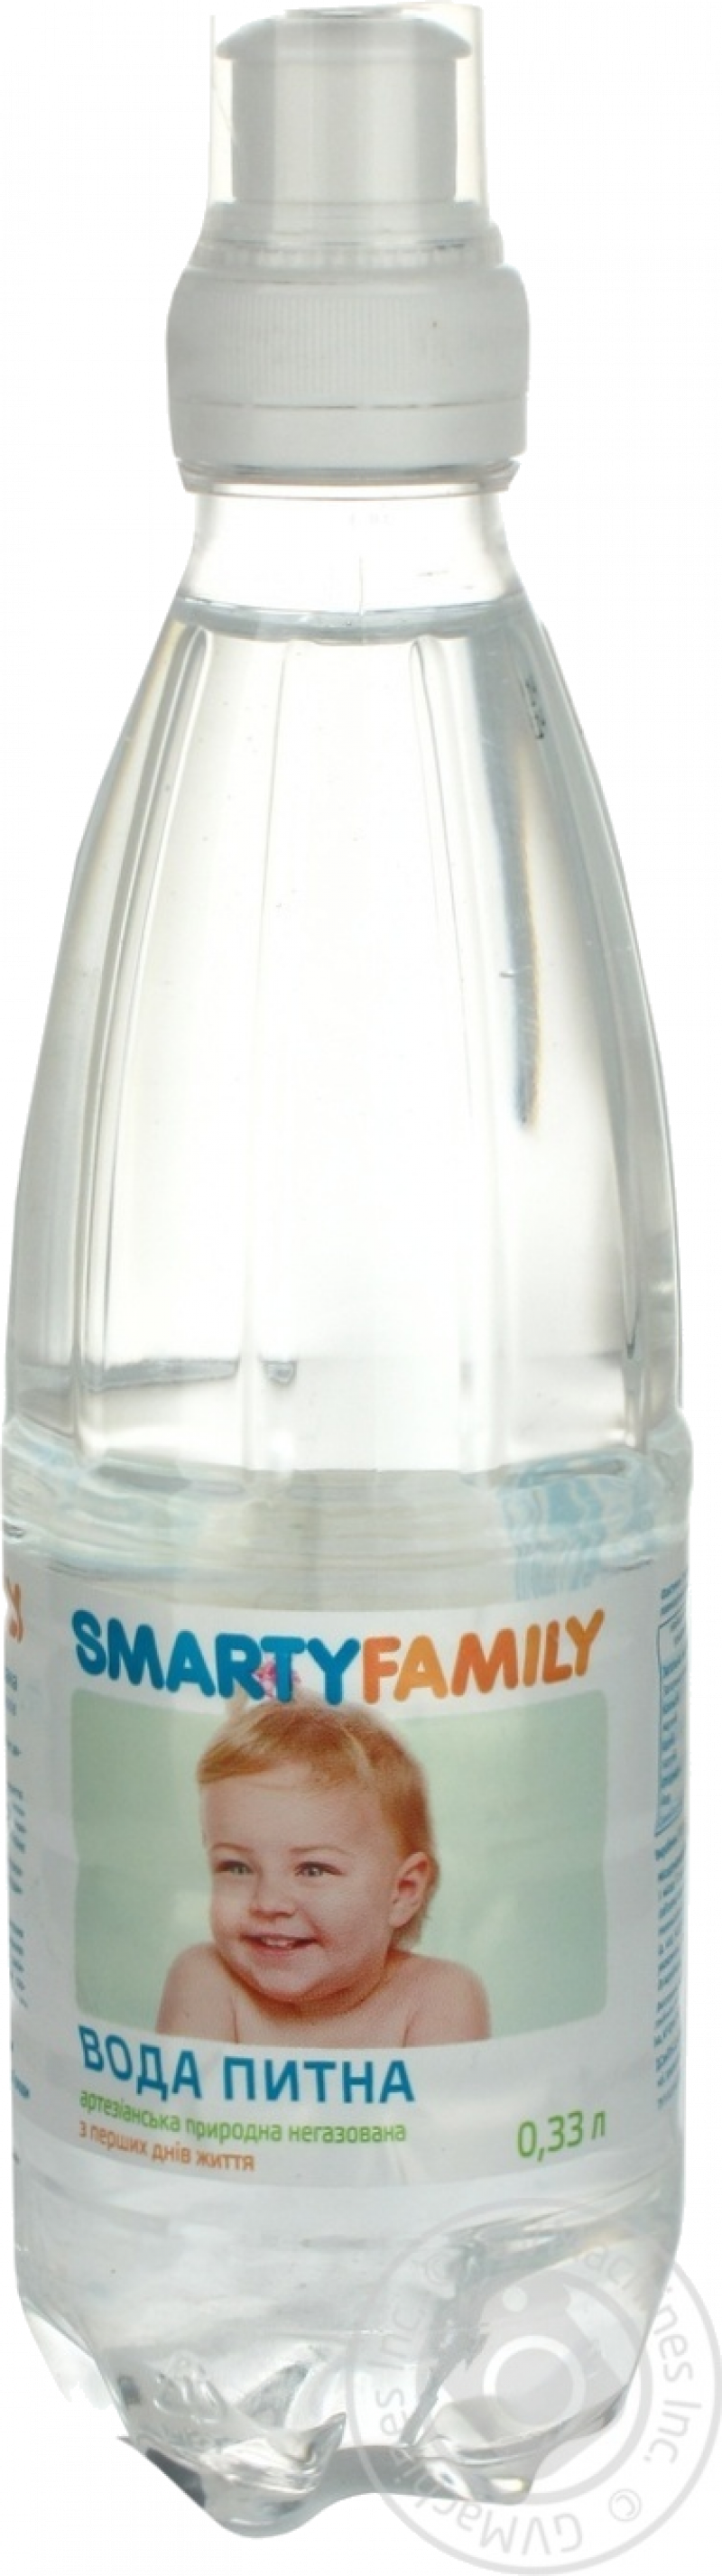 Вода питьевая для детского питания, sport lock, 0,33л (Smarty Family)